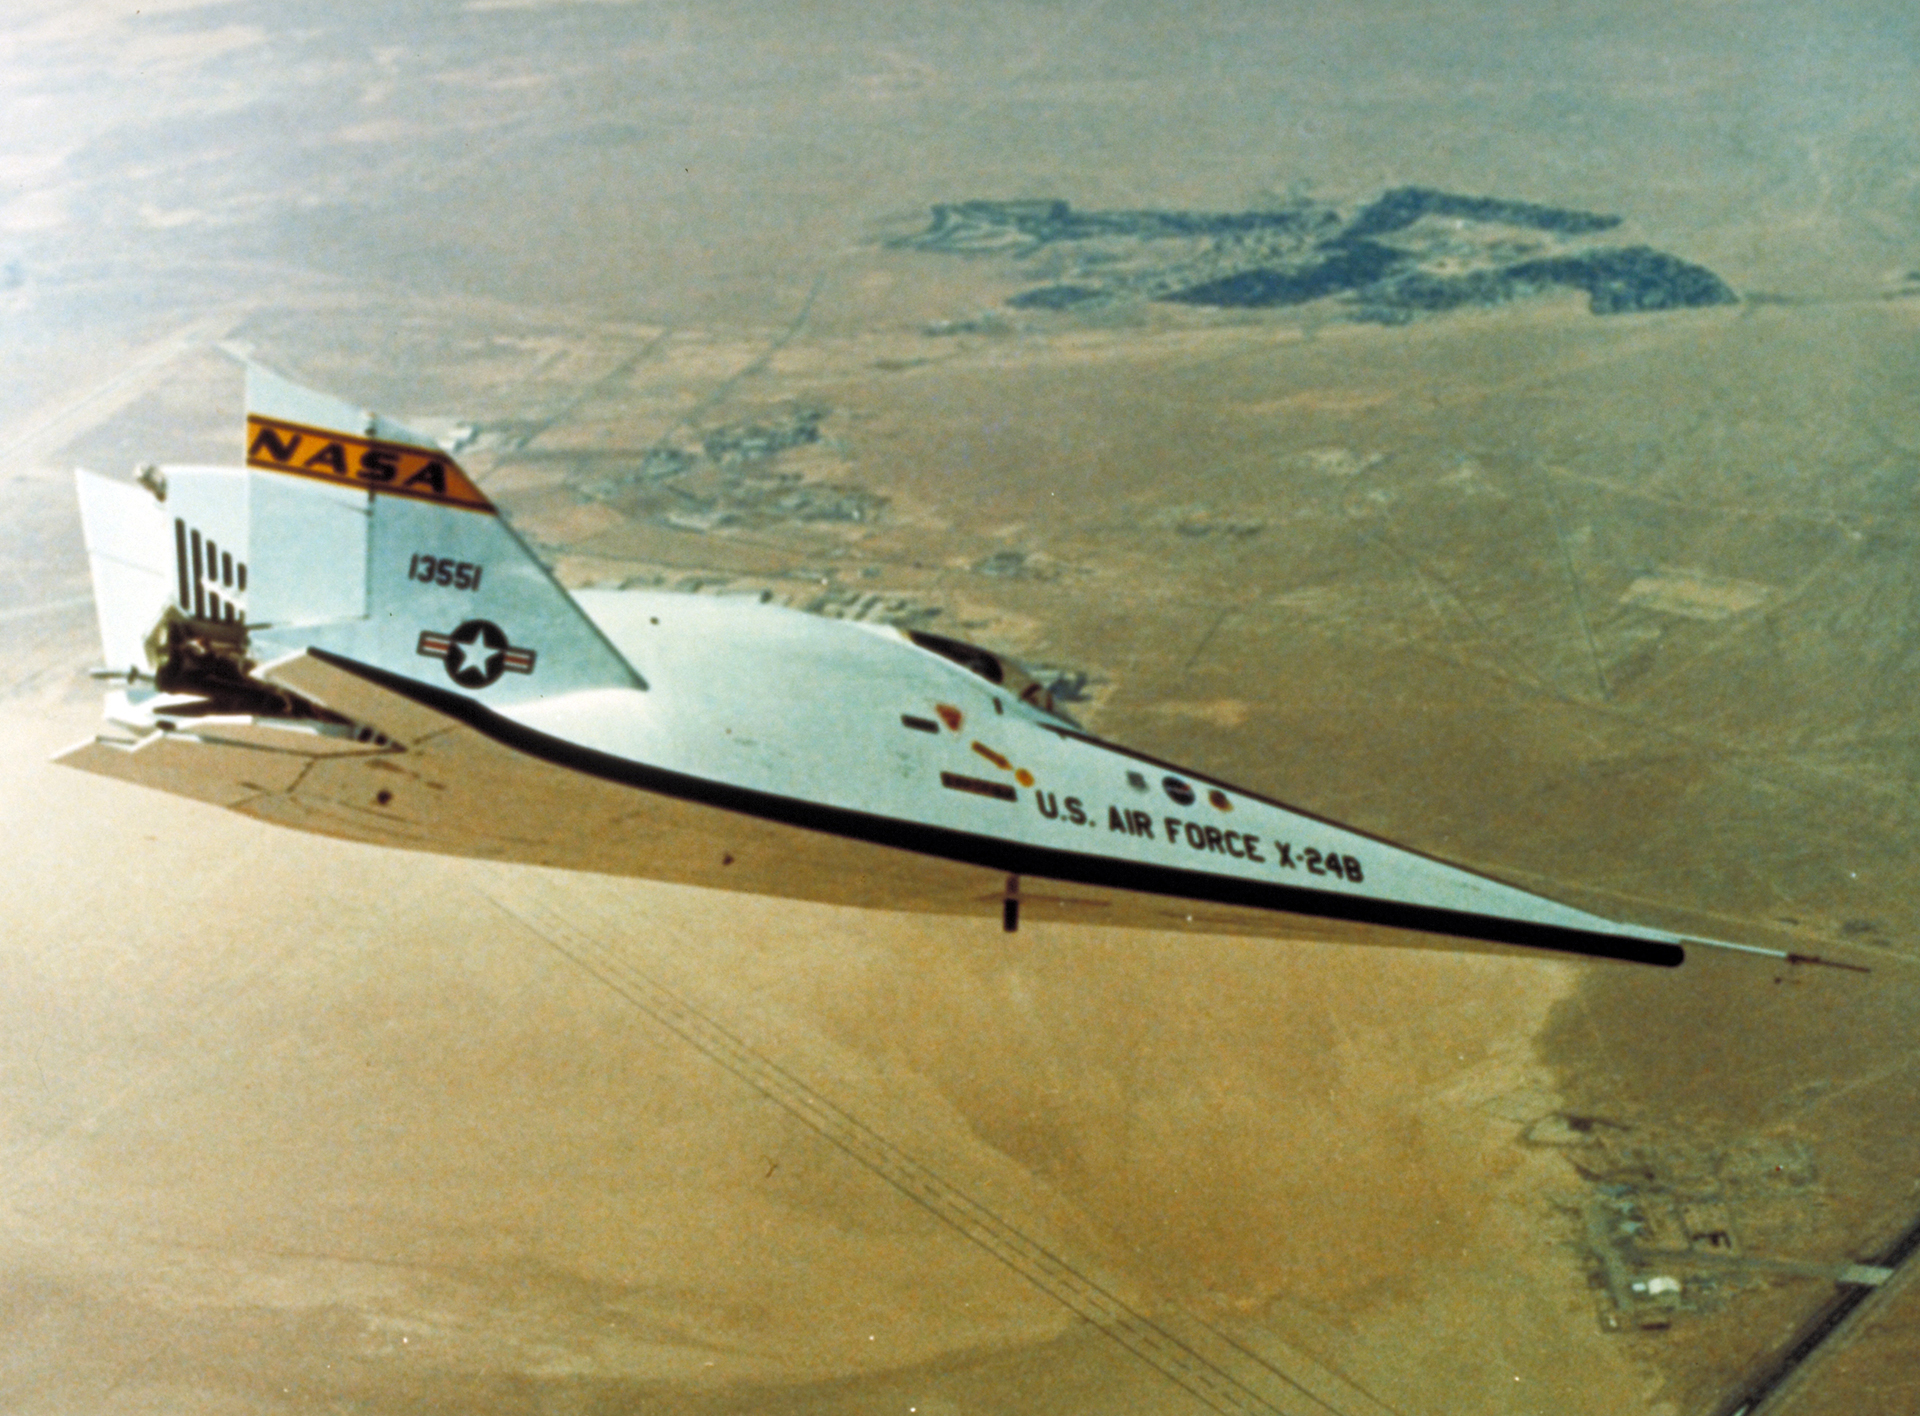 X-24B